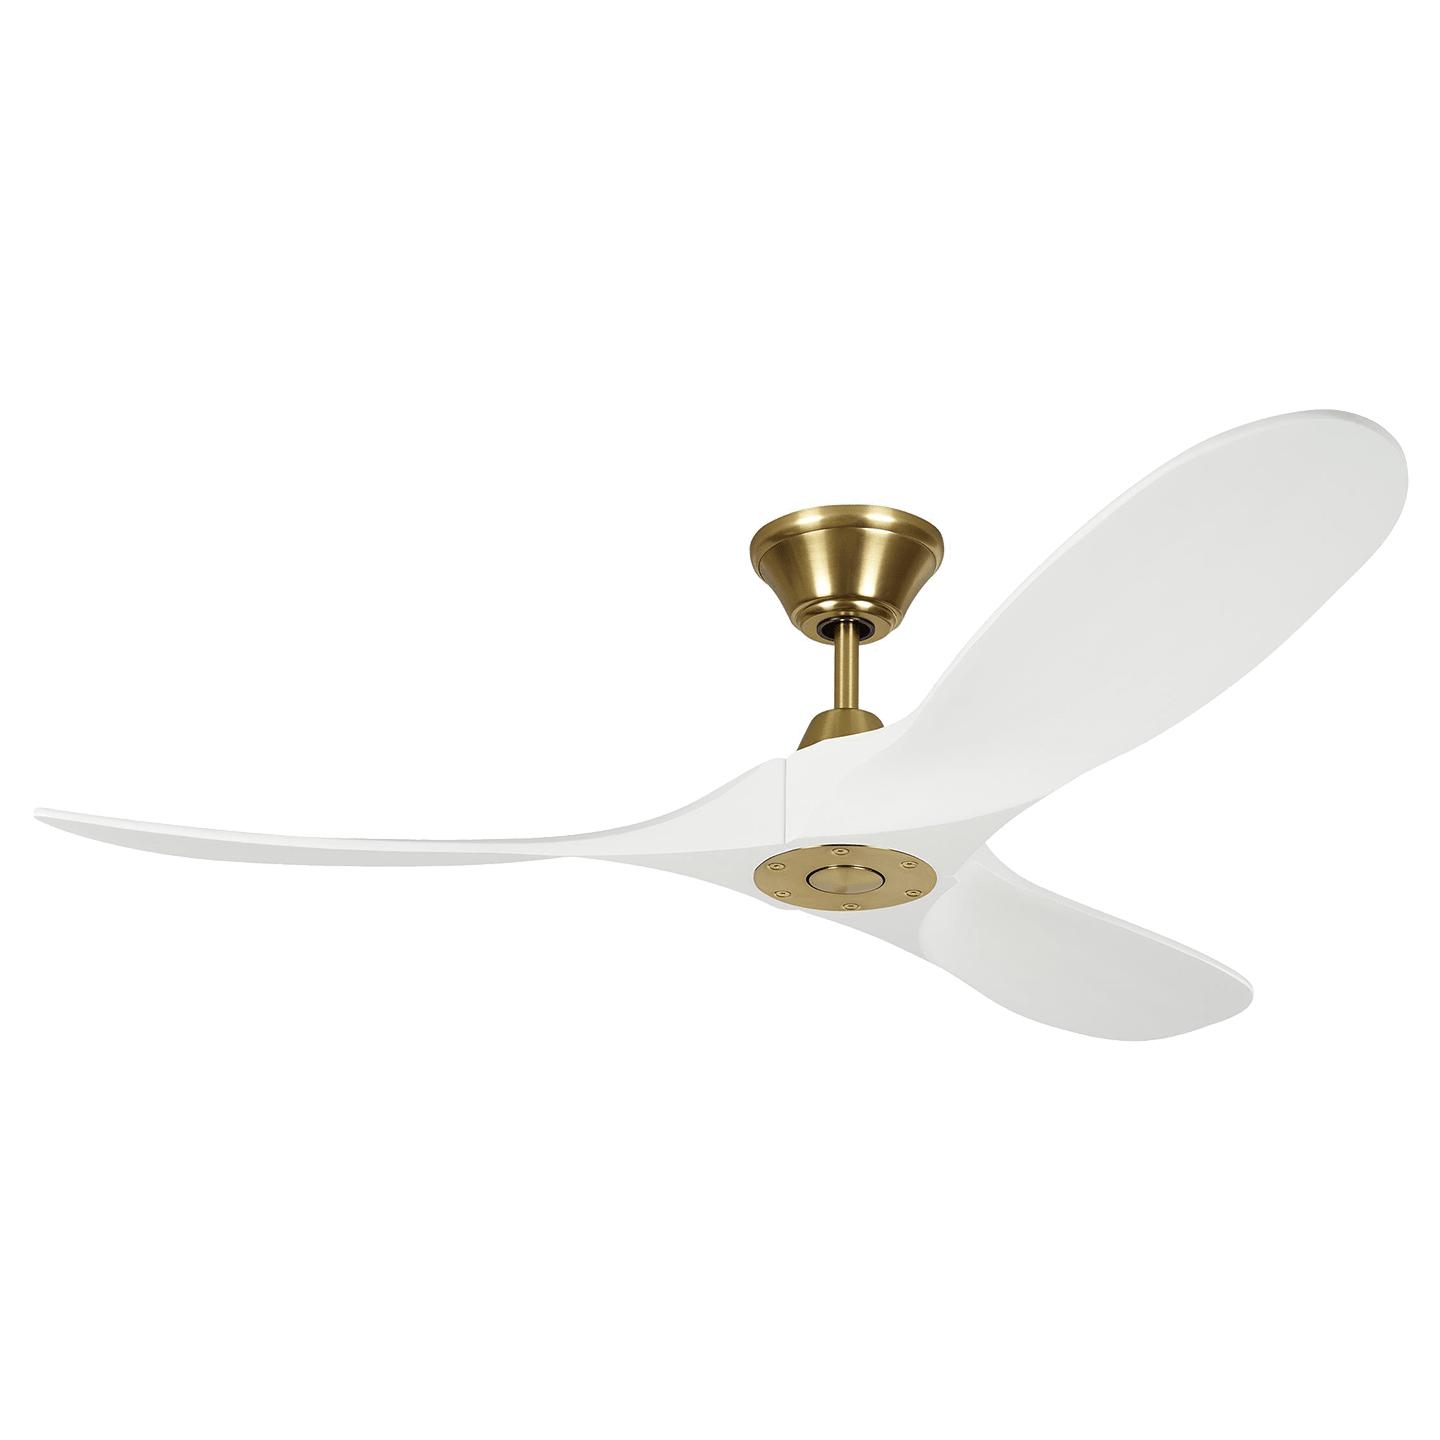 Купить Потолочный вентилятор Maverick 52" Ceiling Fan в интернет-магазине roooms.ru